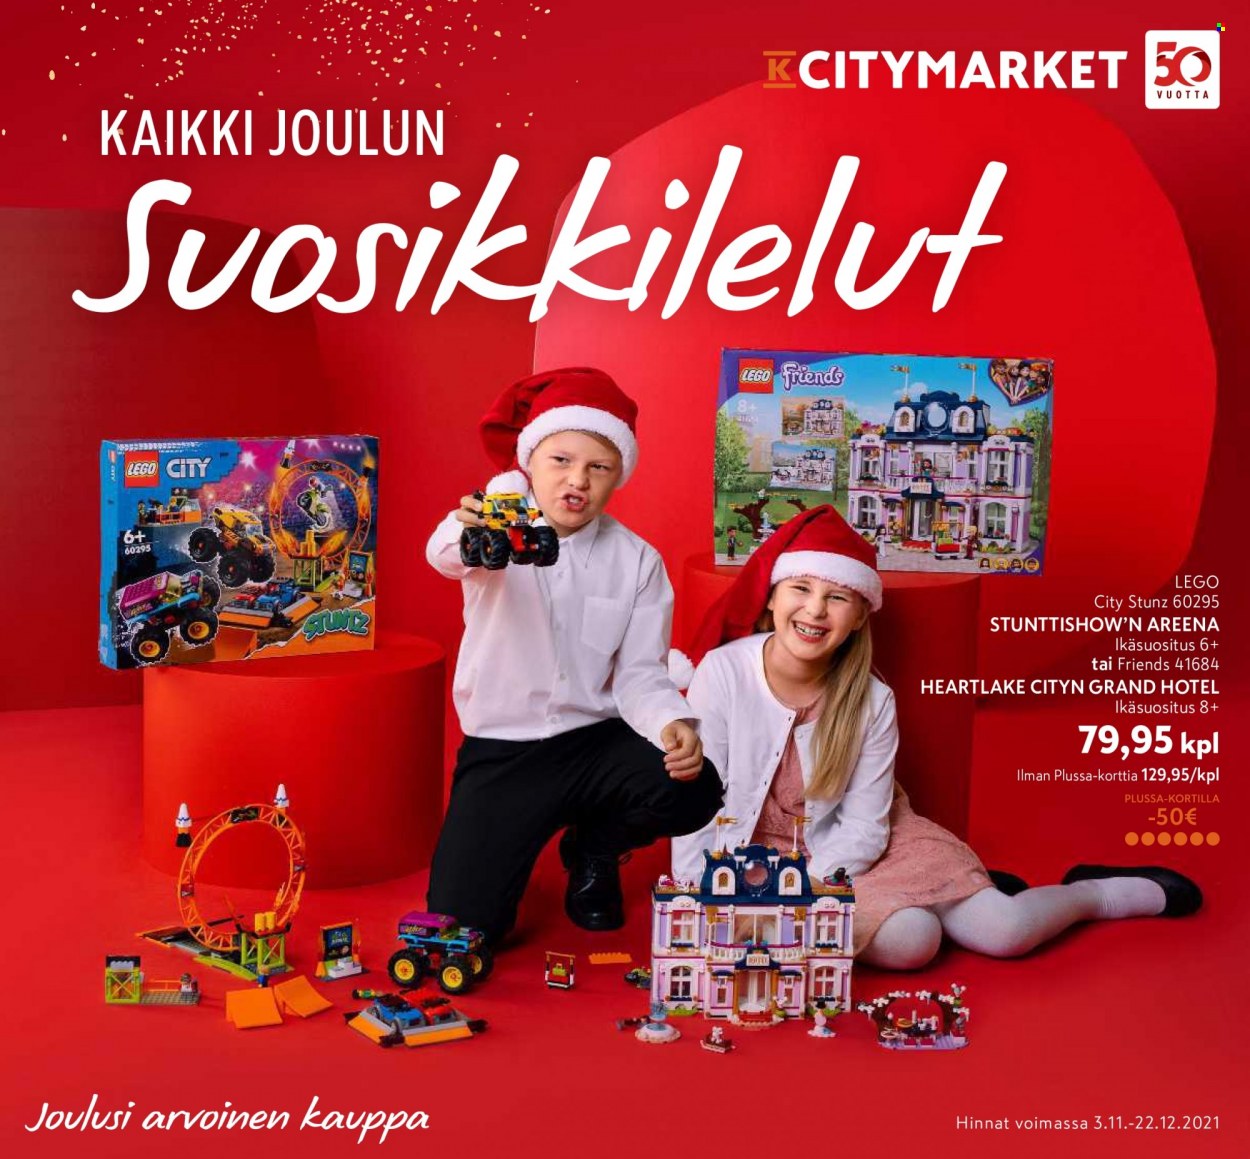 K-citymarket tarjoukset  - 03.11.2021 - 22.12.2021 - Tarjoustuotteet - lego, lego city. Sivu 1.